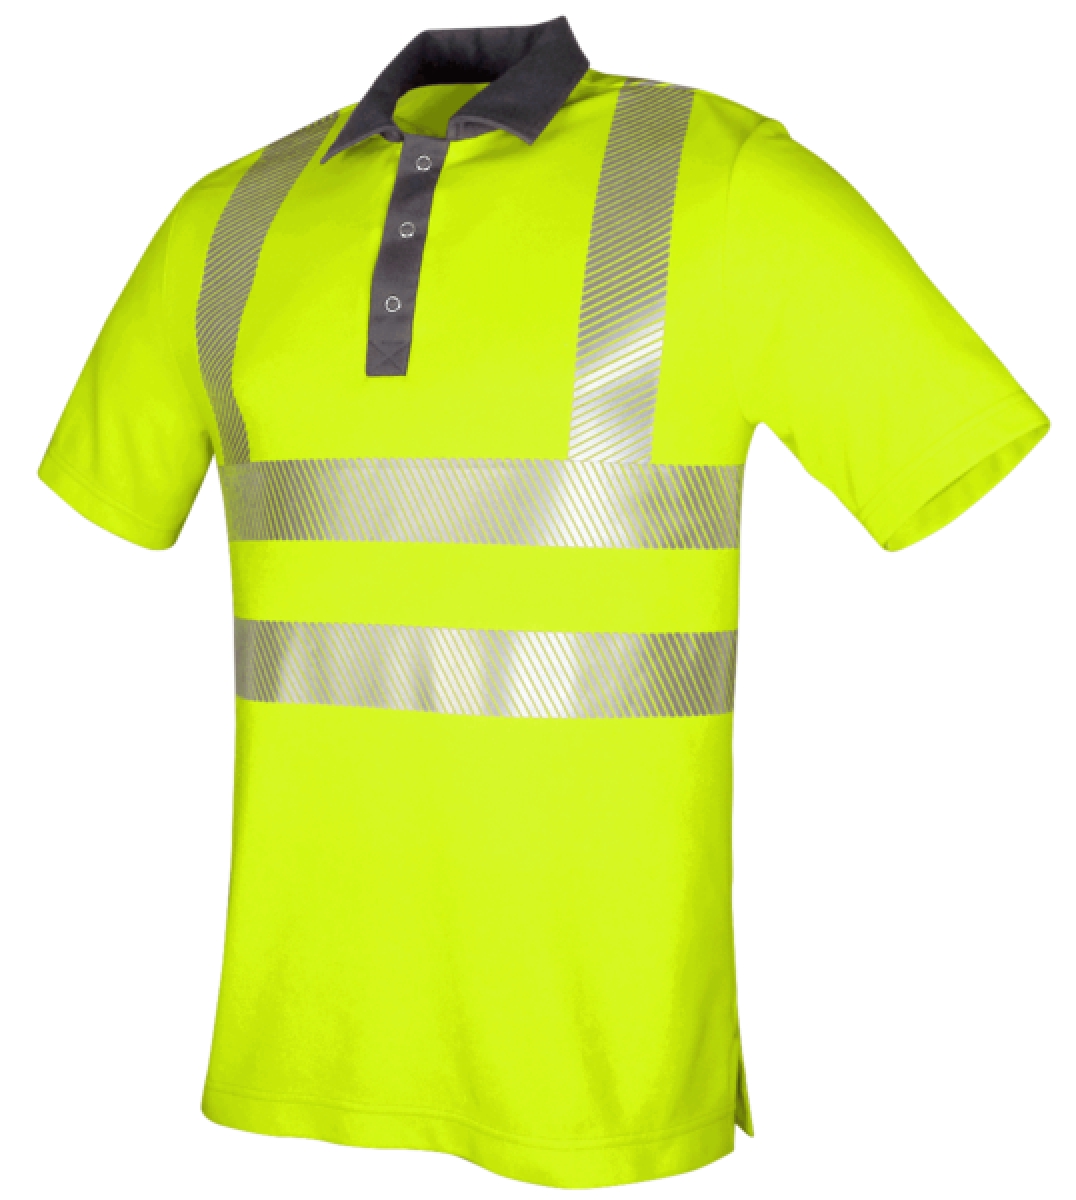 TEAMDRESS-Warnschutz, PSA, Warnschutz-Poloshirt, Kl. 2, warngelb/grau